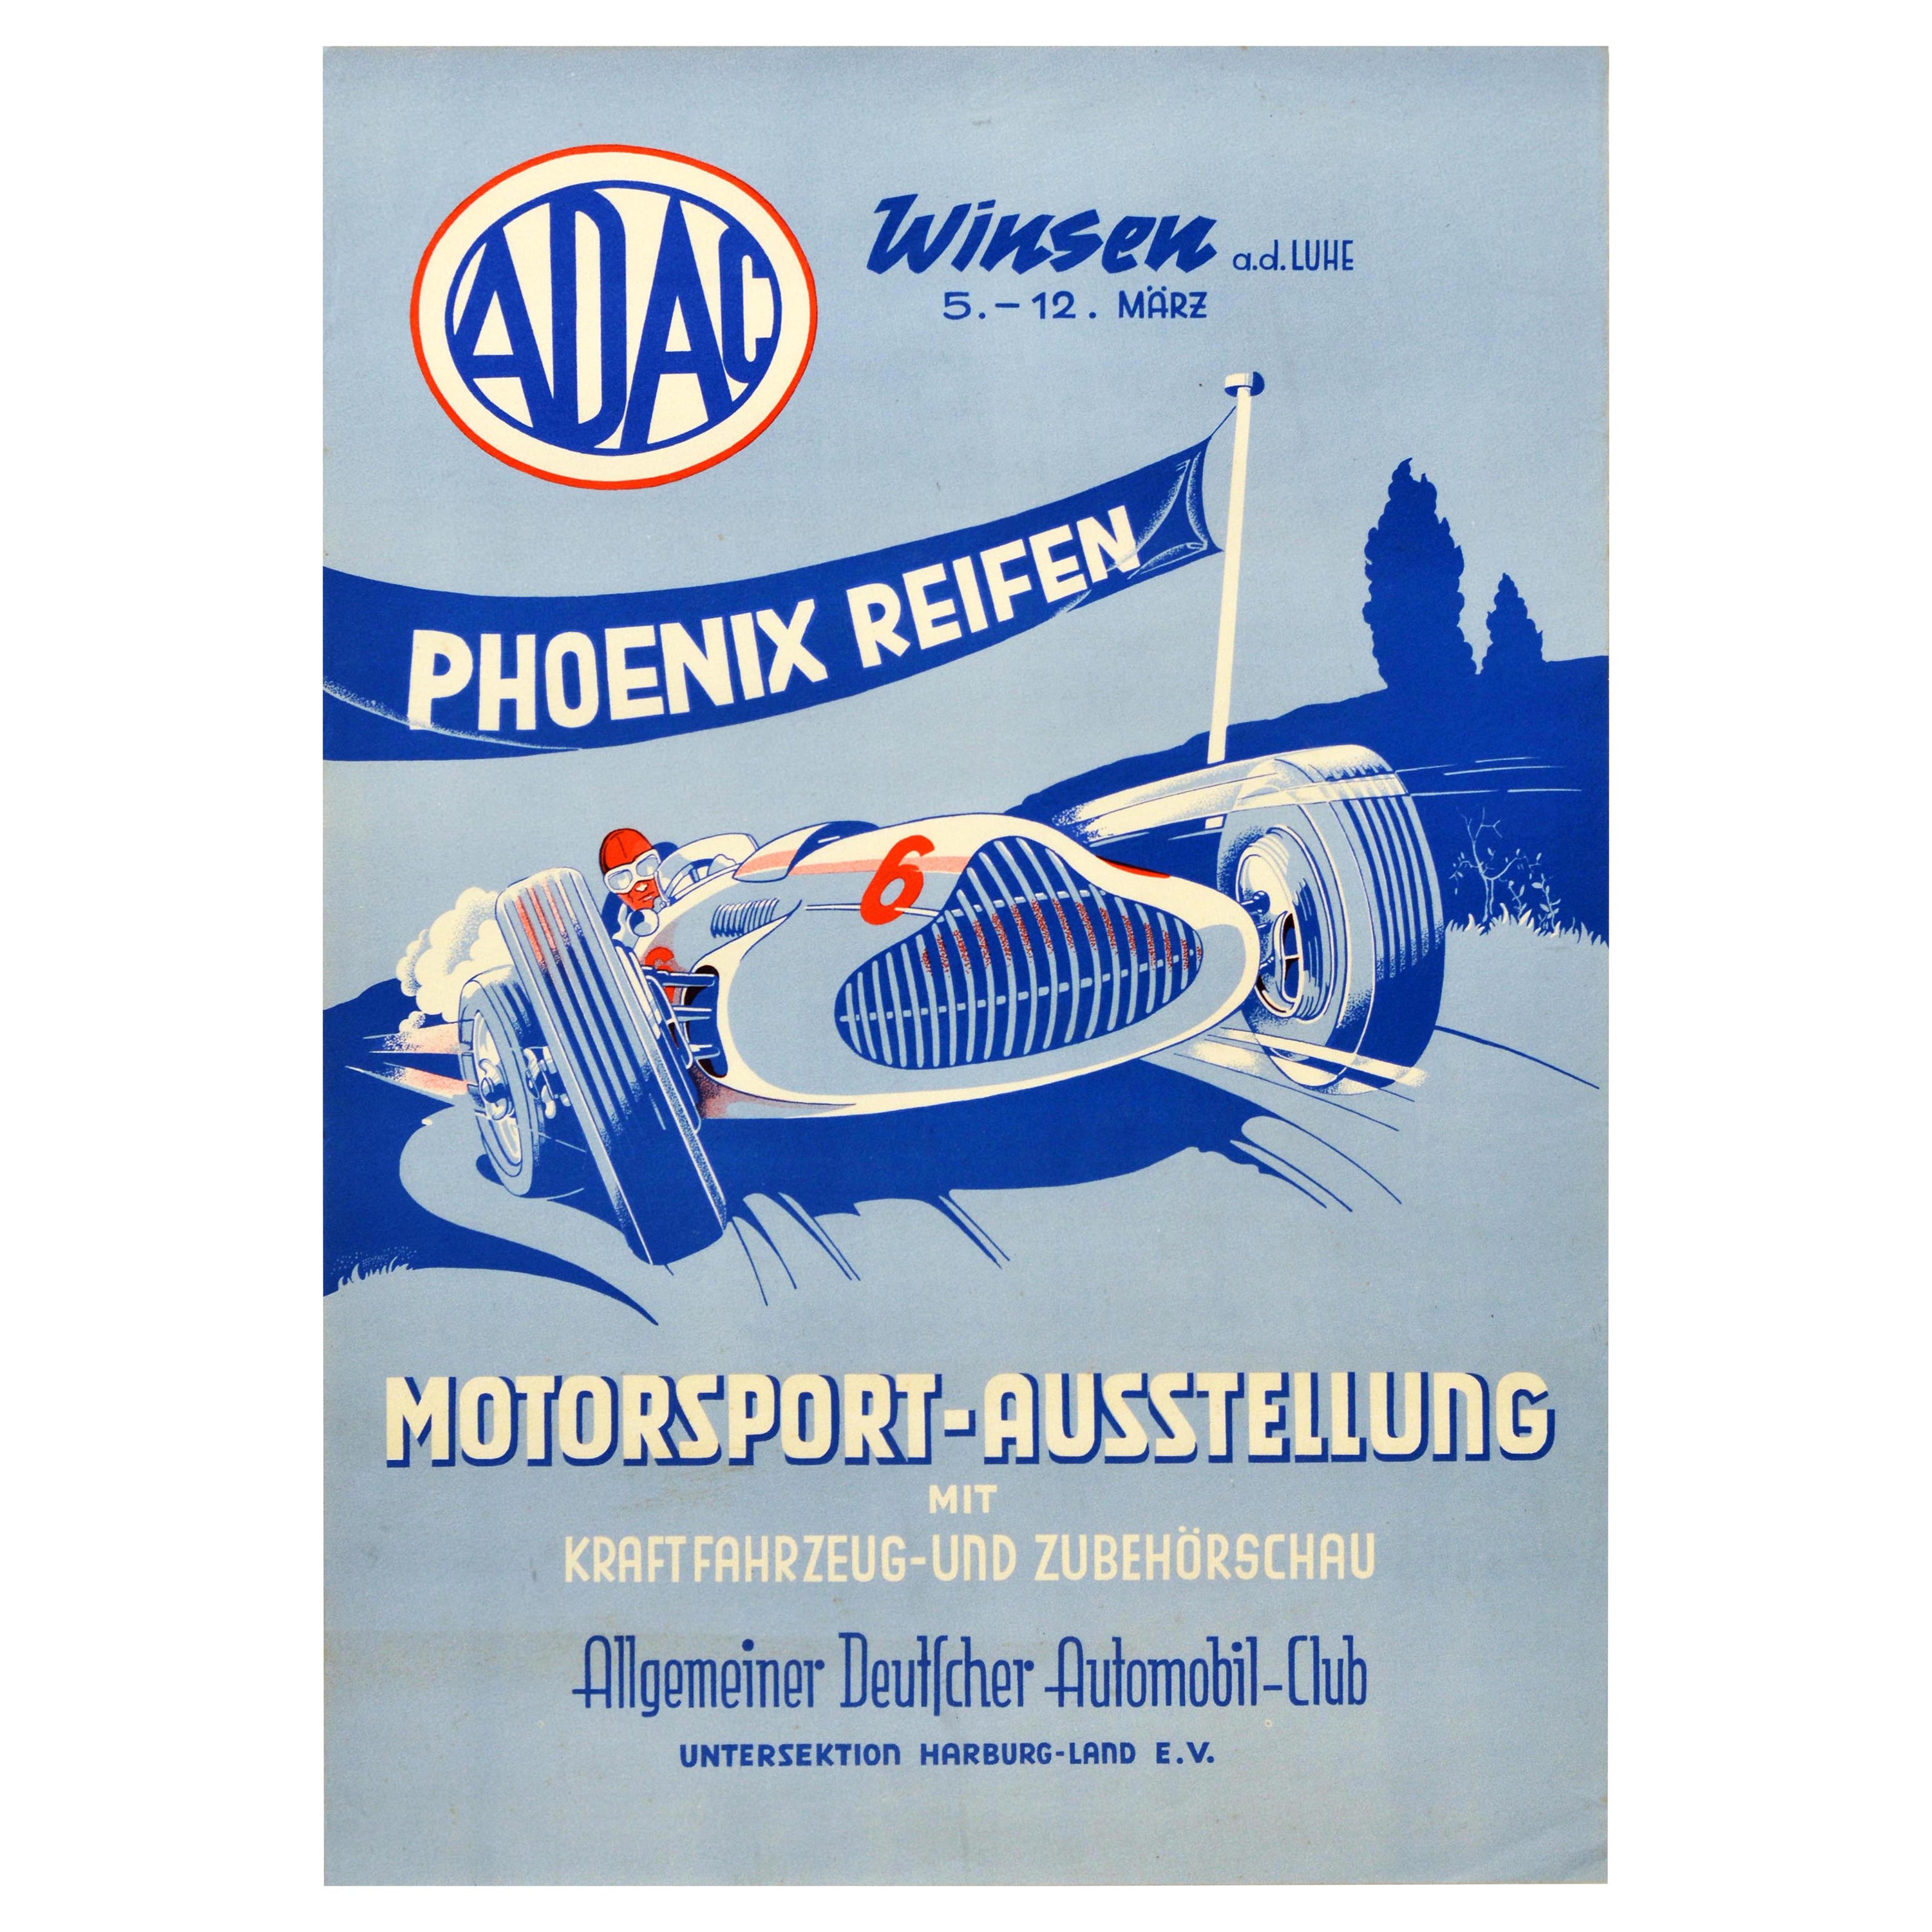 Affiche vintage d'origine d'une exposition de voitures de sport ADAC Phoenix Reifen, Affiche publicitaire